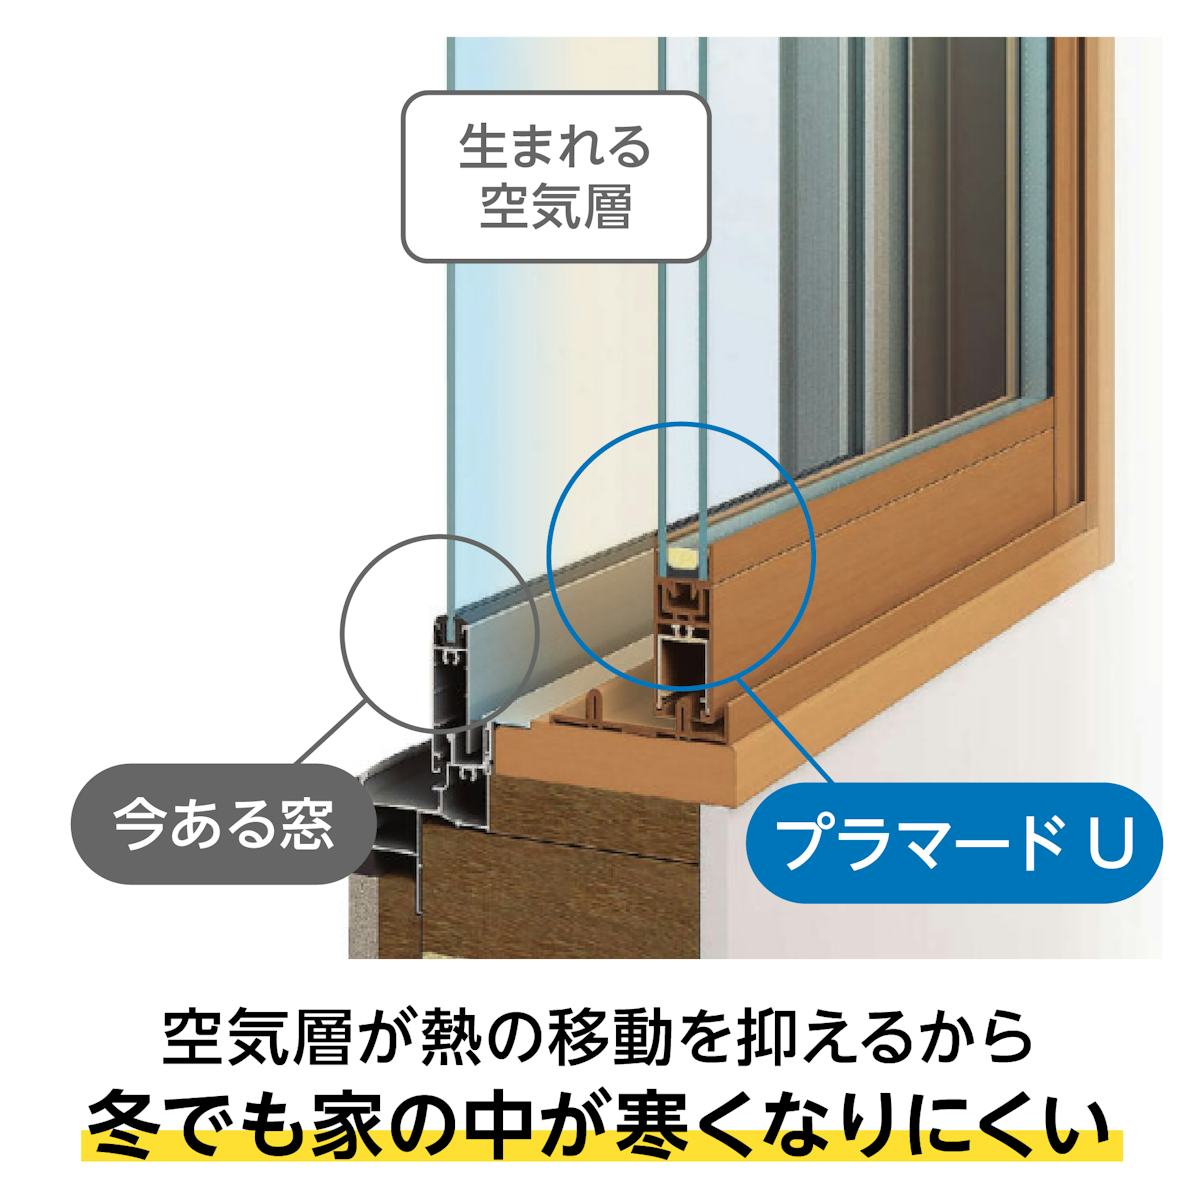 YKK APの内窓「マドリモ プラマードU」引き違い窓(4枚建て) - 熱の移動を抑える空気層をつくる